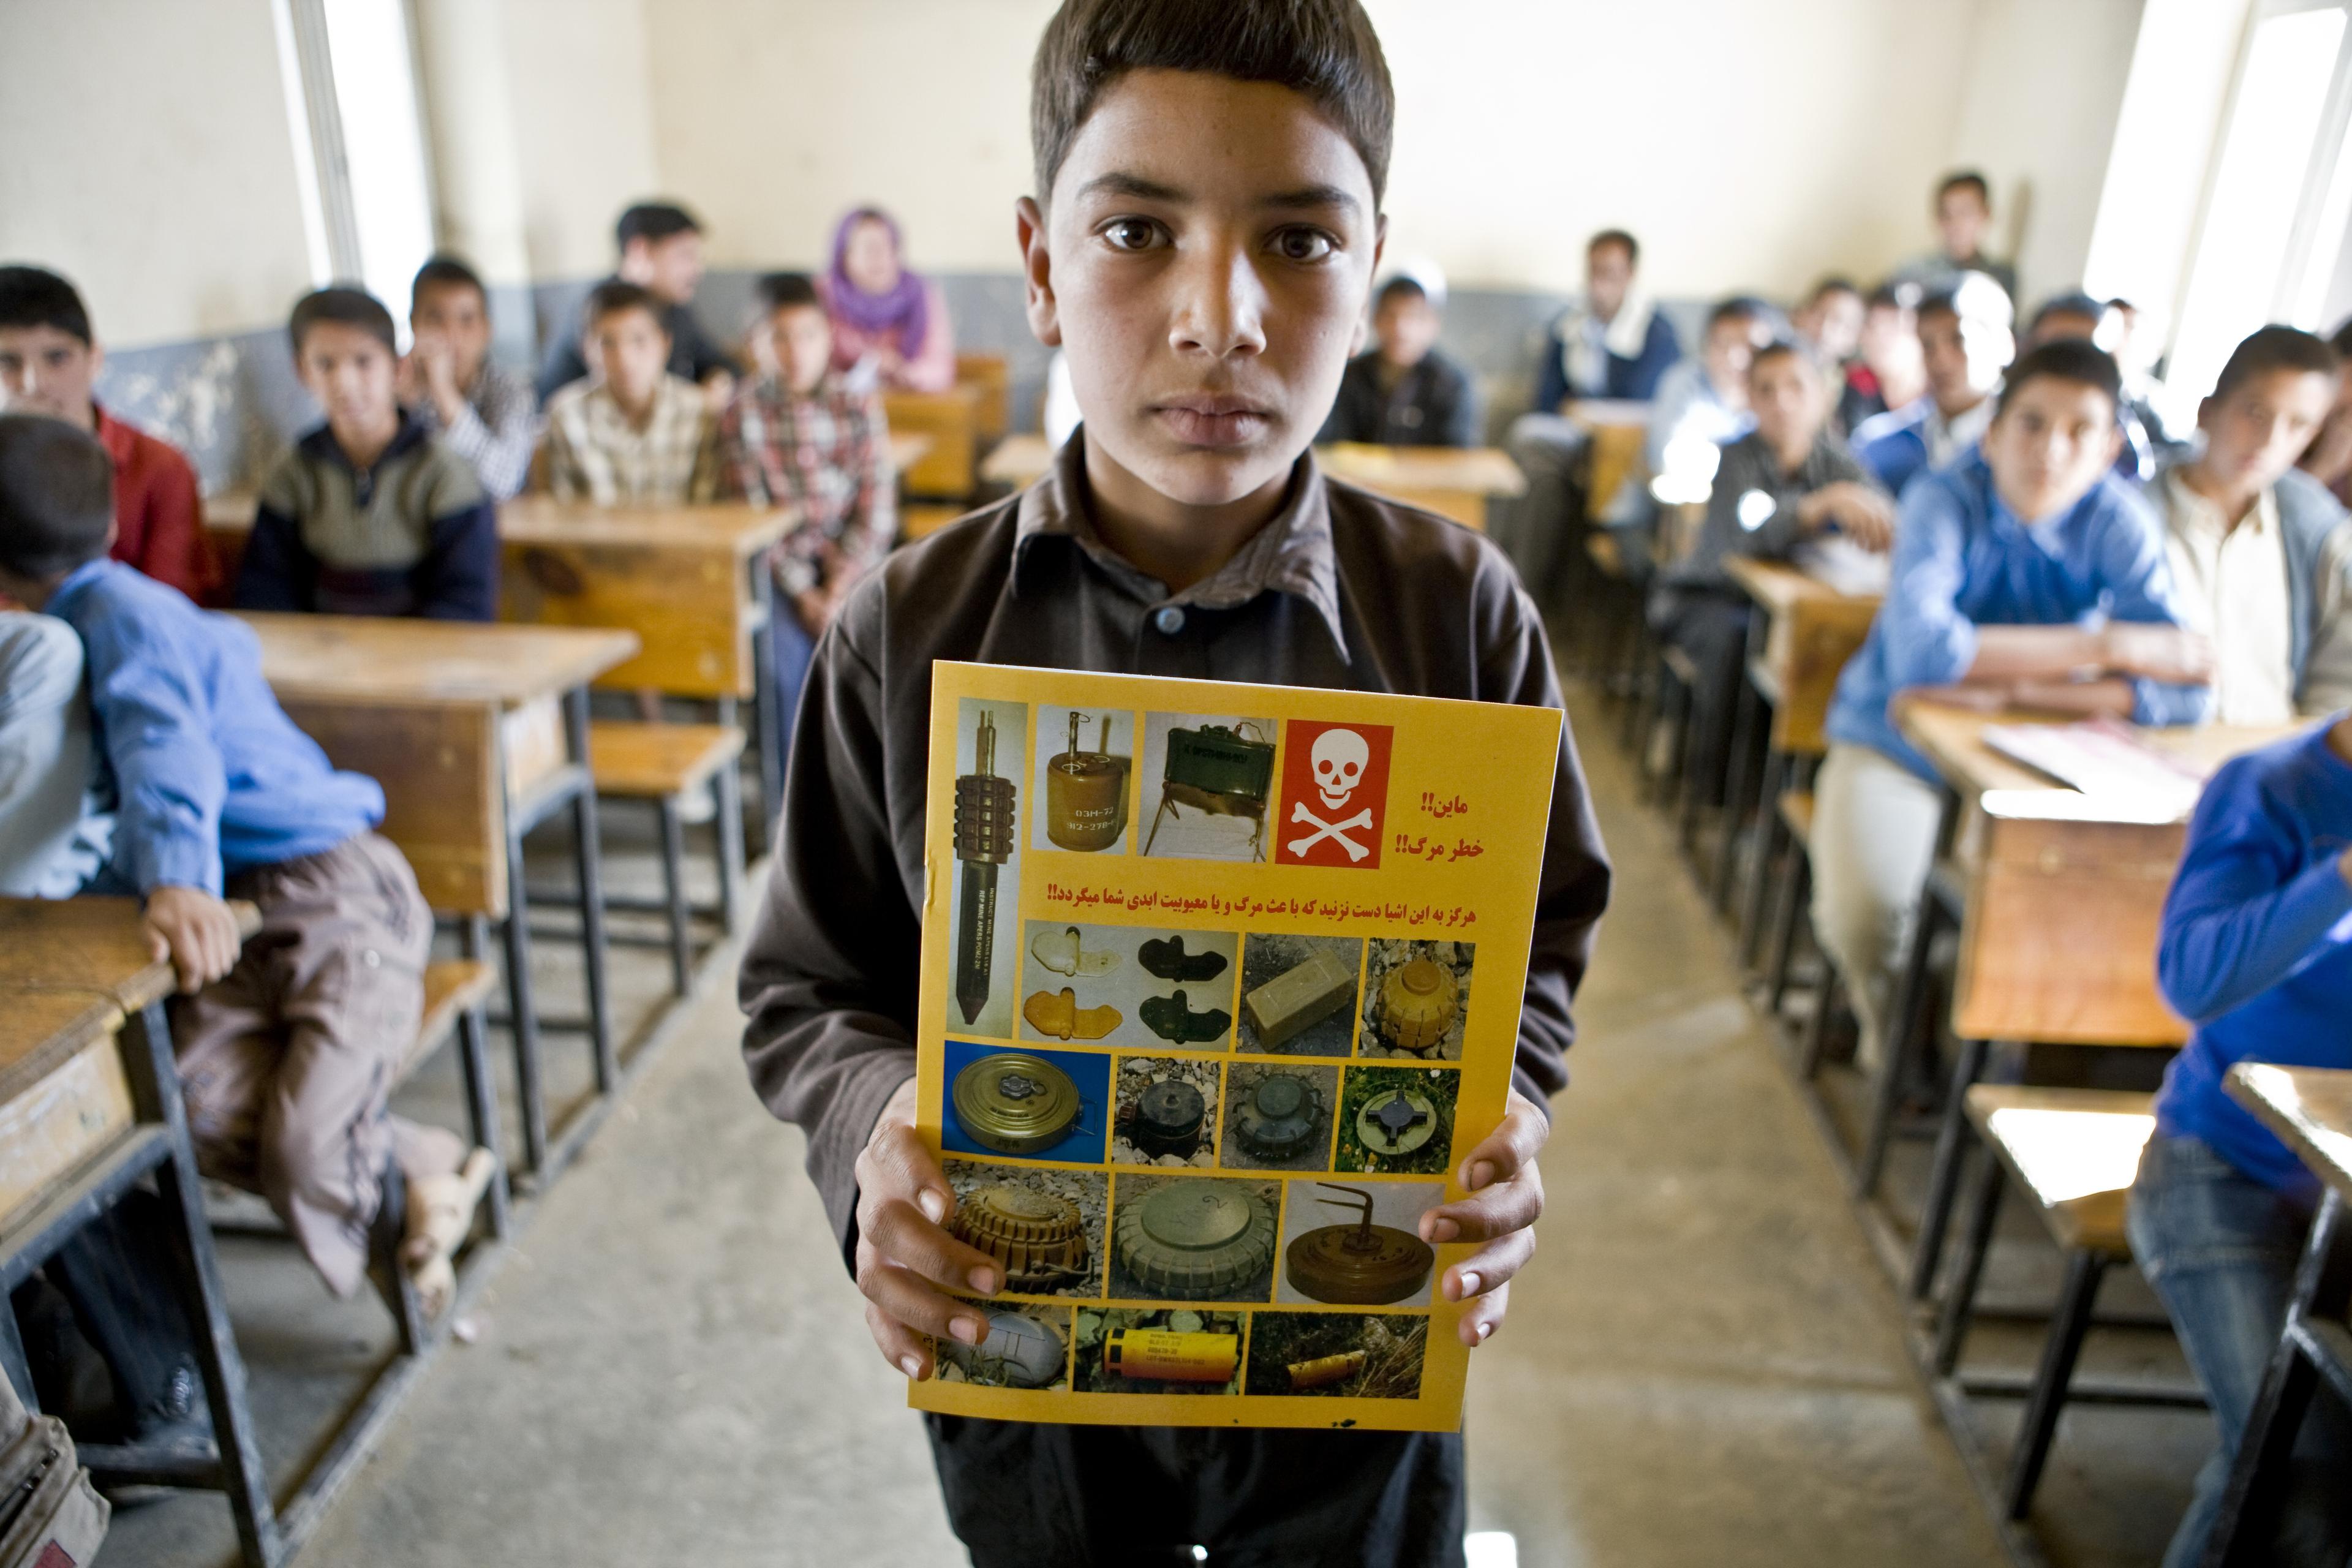 Un garçon se tient dans la salle de classe et brandit un cahier d'information sur les mines. Ses camarades de classe sont en arrière-plan.